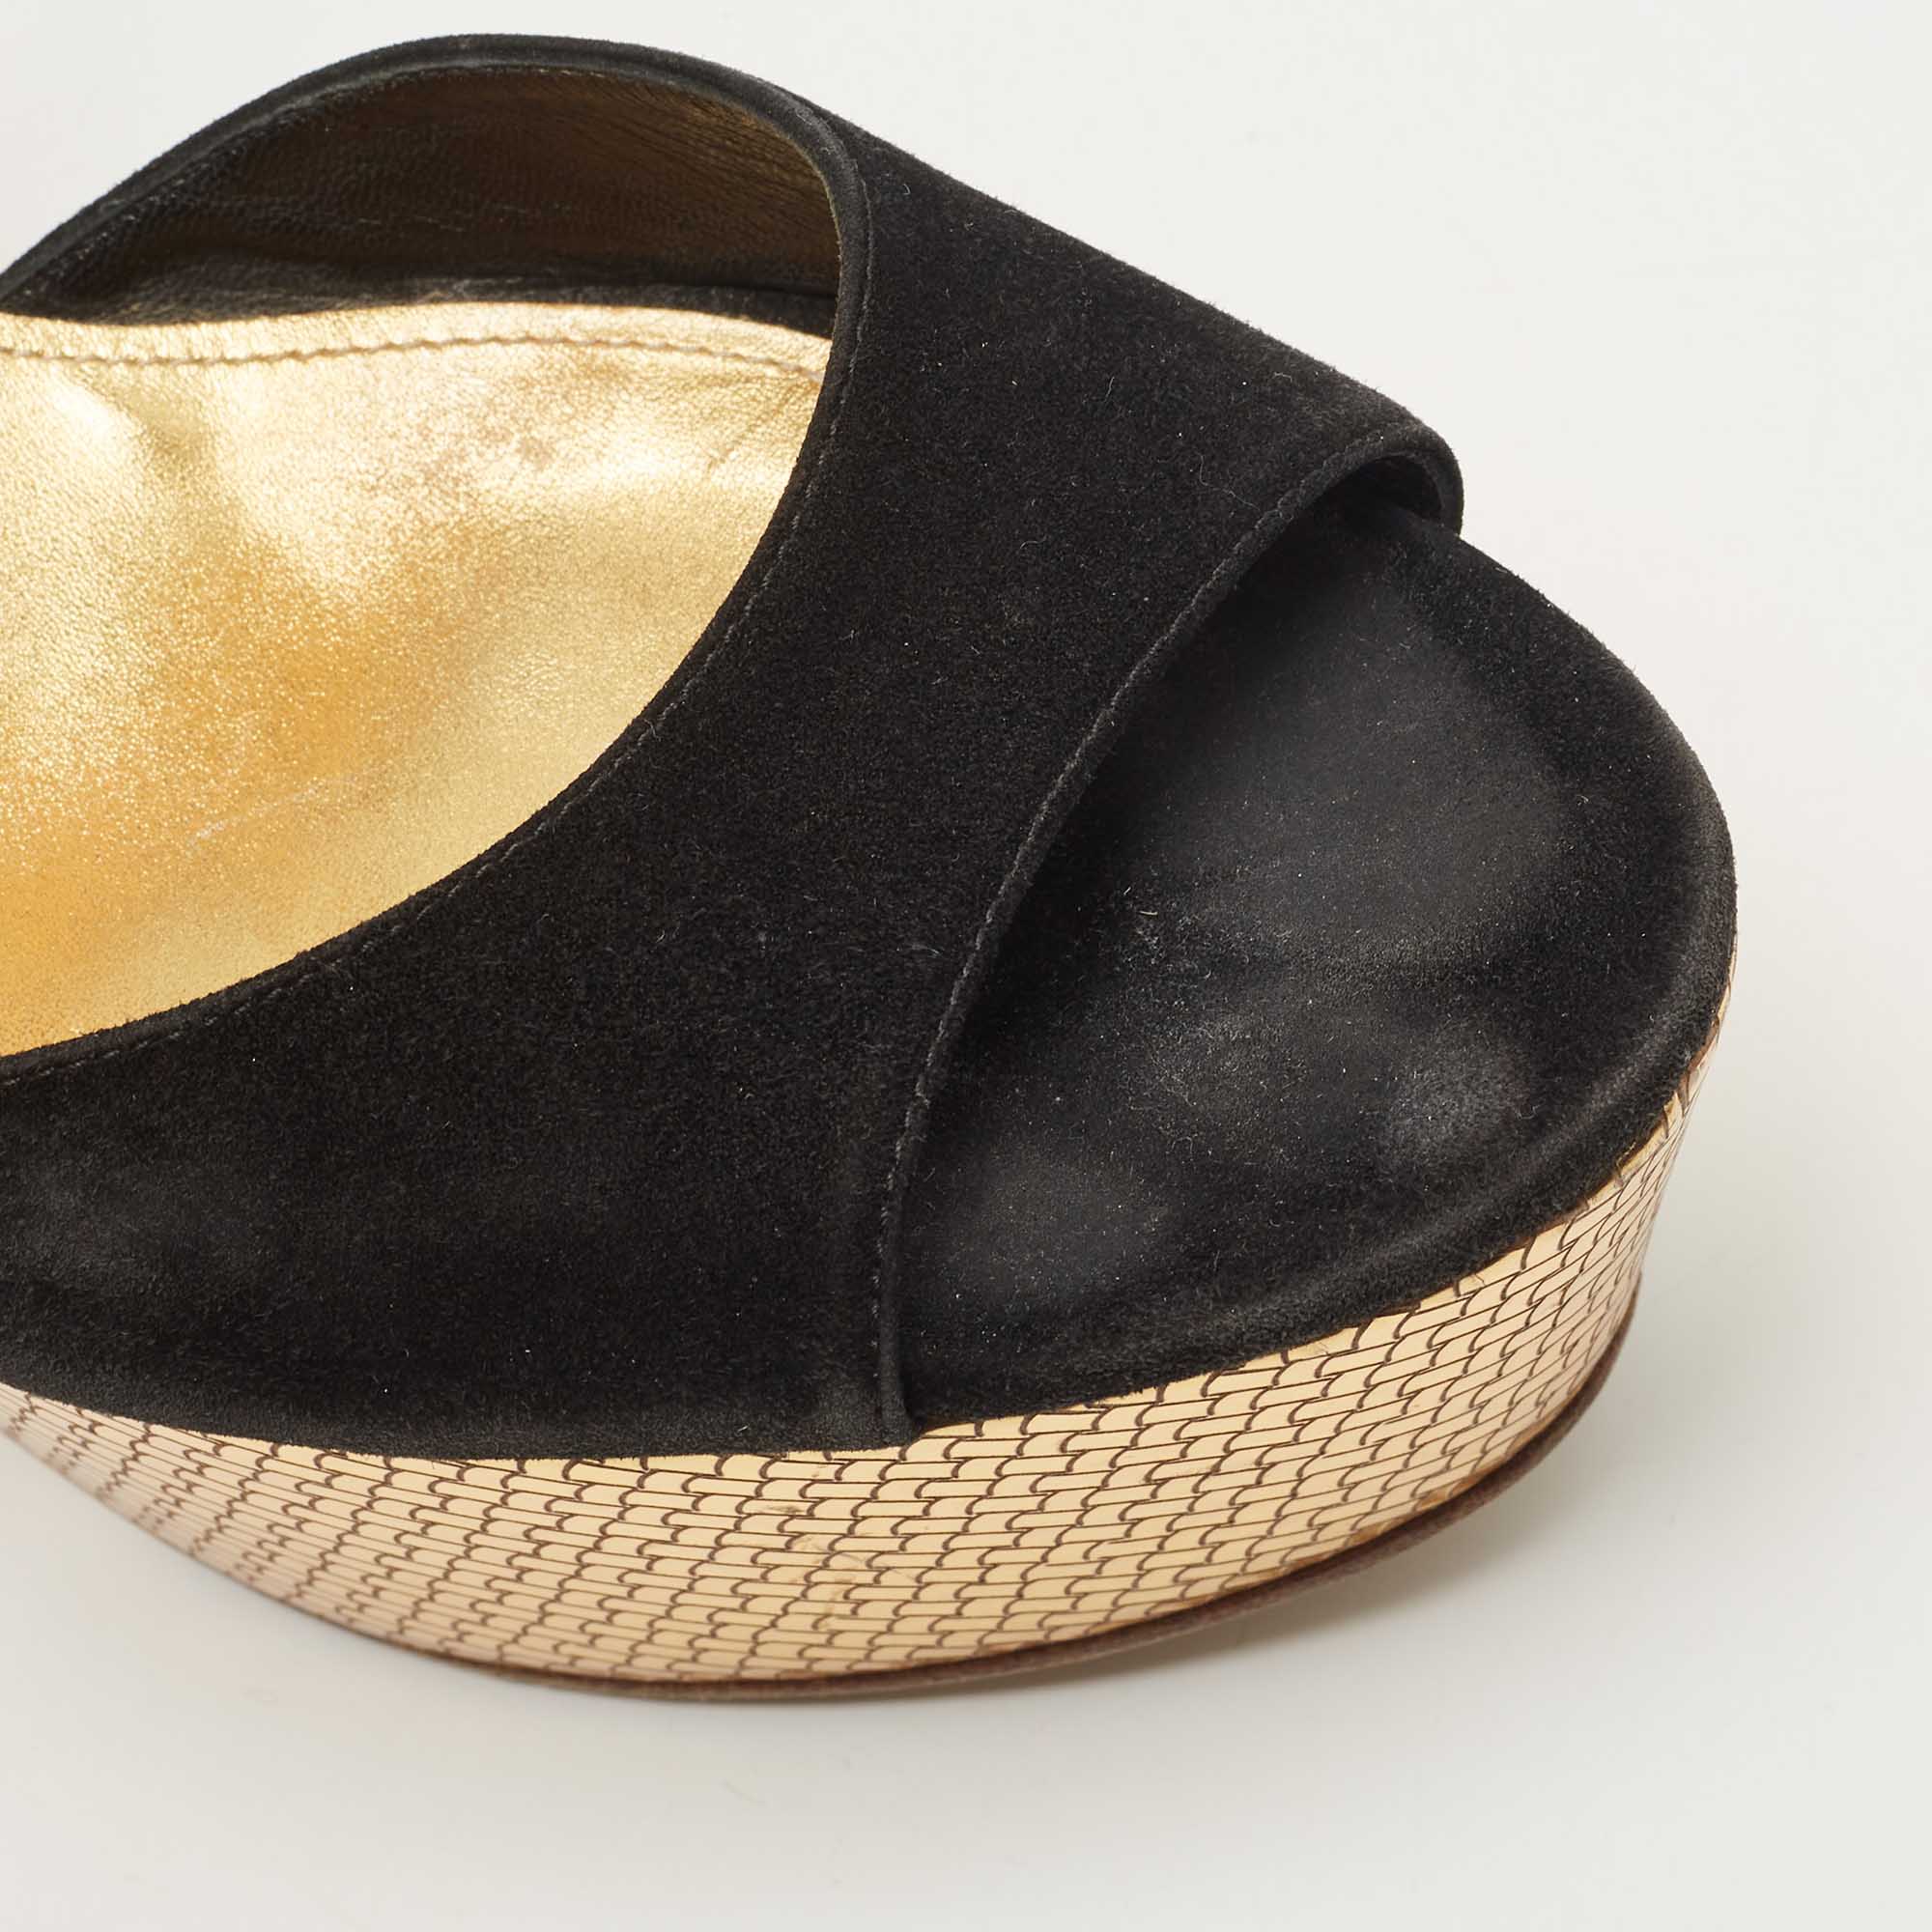 Bottega Veneta Black Suede Platform Wedge Ankle Strap Sandals Size 39.5